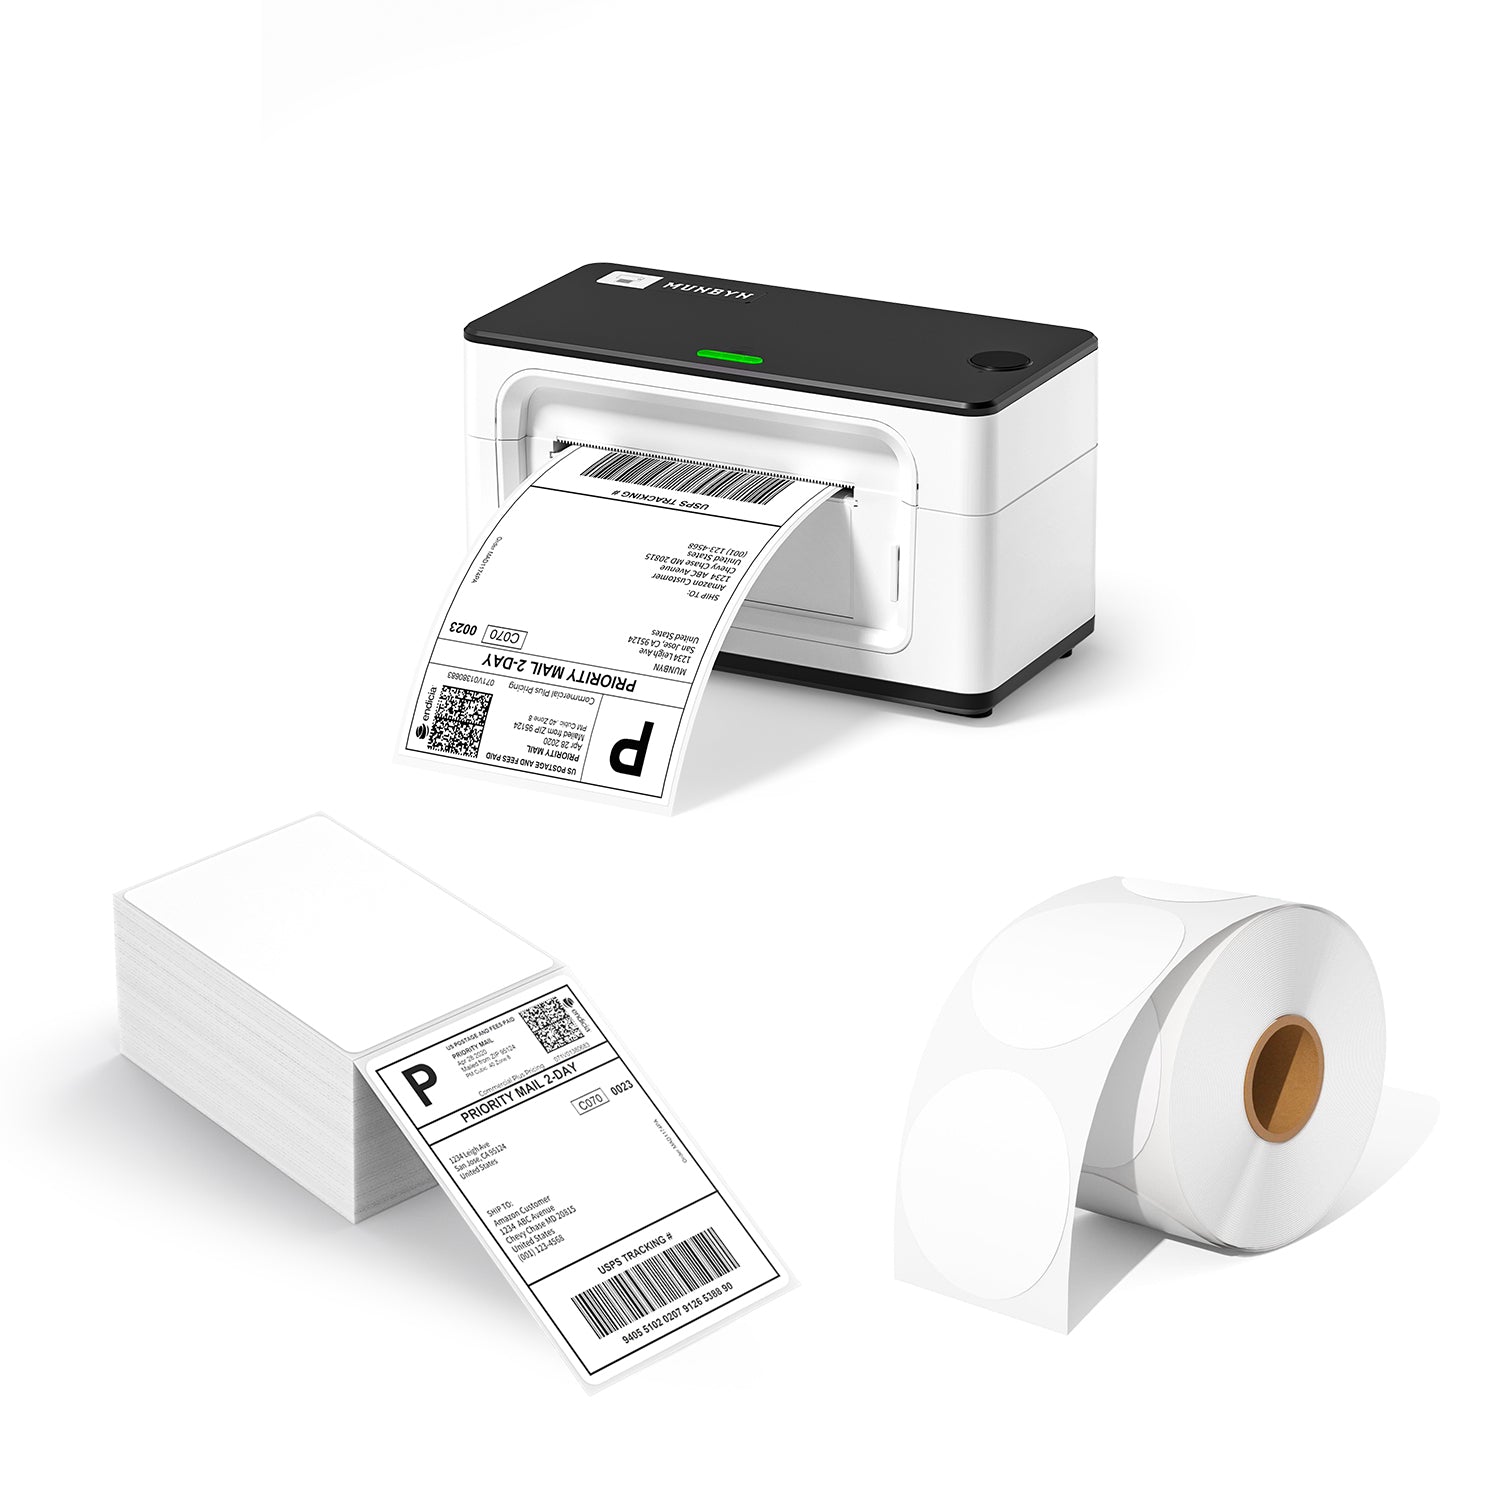 MUNBYN RealWriter 941 AirPrint Thermal Label Printer Kit